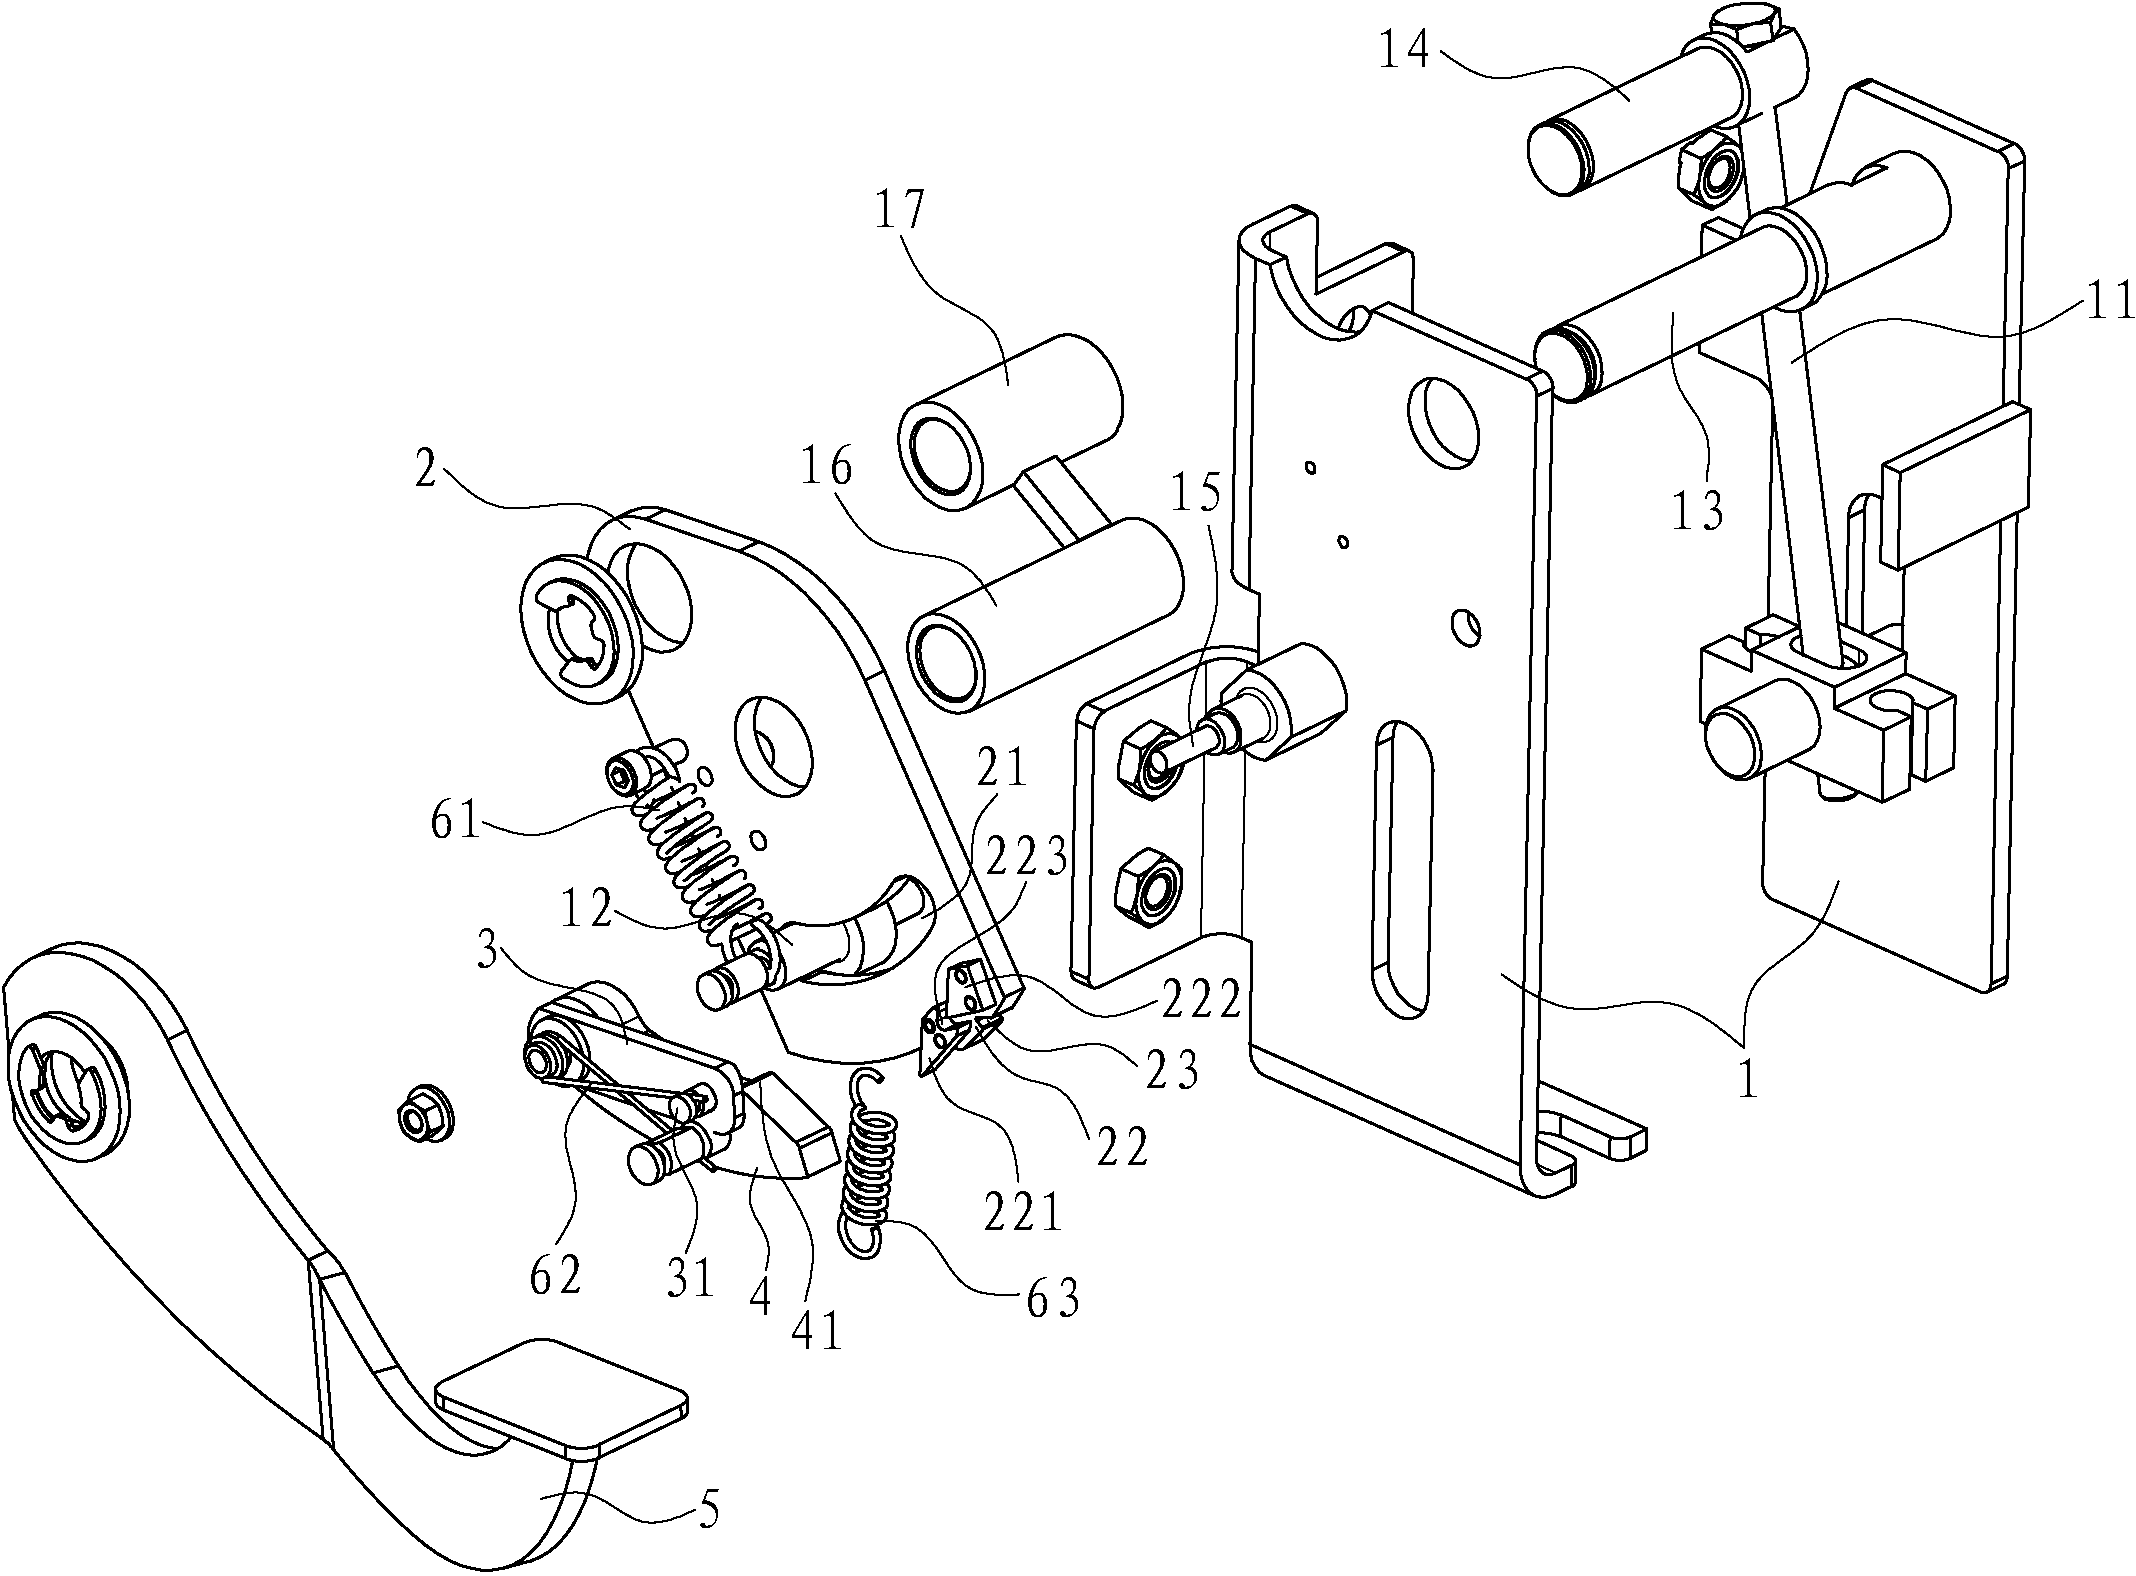 Foot parking braking and unlocking mechanism